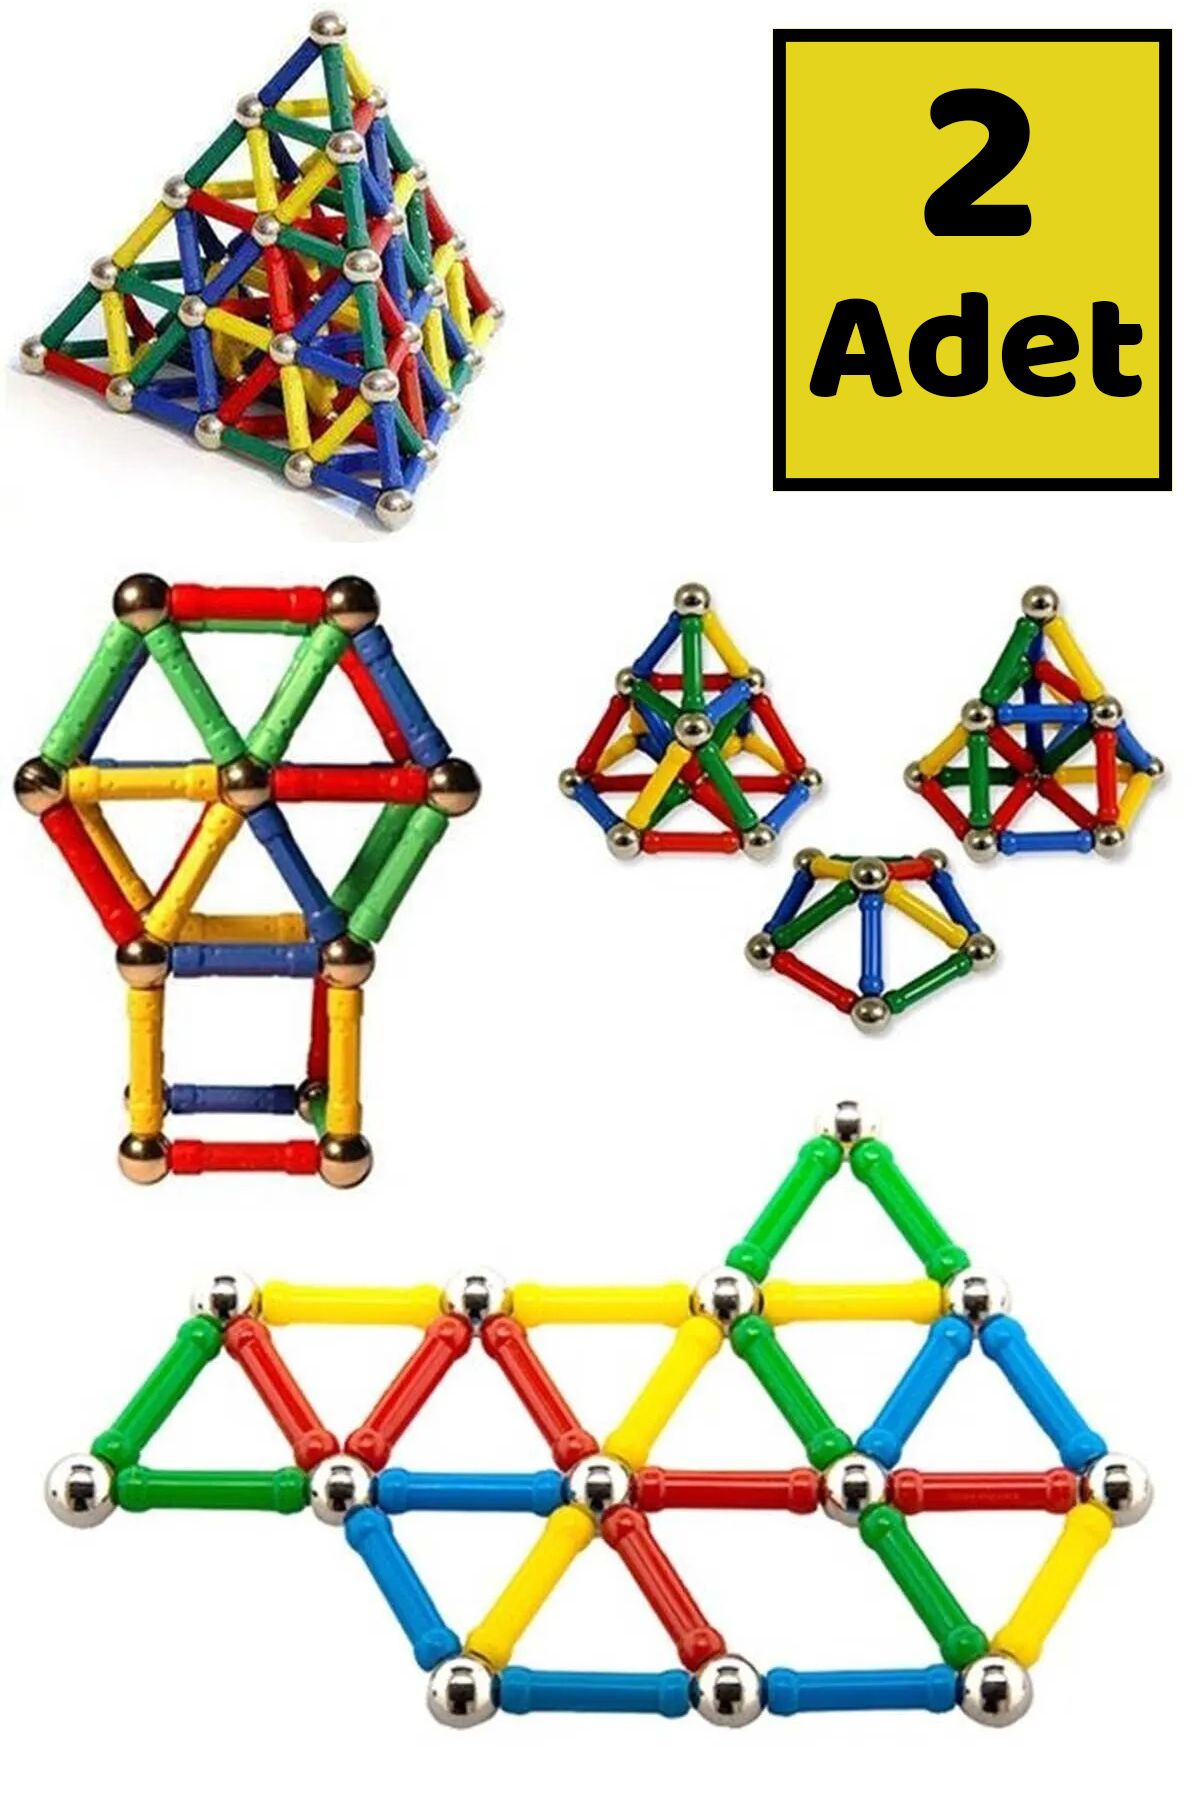 Mobee 2 Adet Manyetik Lego Mıknatıslı Denge Oyun Çubukları Eğitici Oyuncak 2 Adet 37 Parça Lego Seti